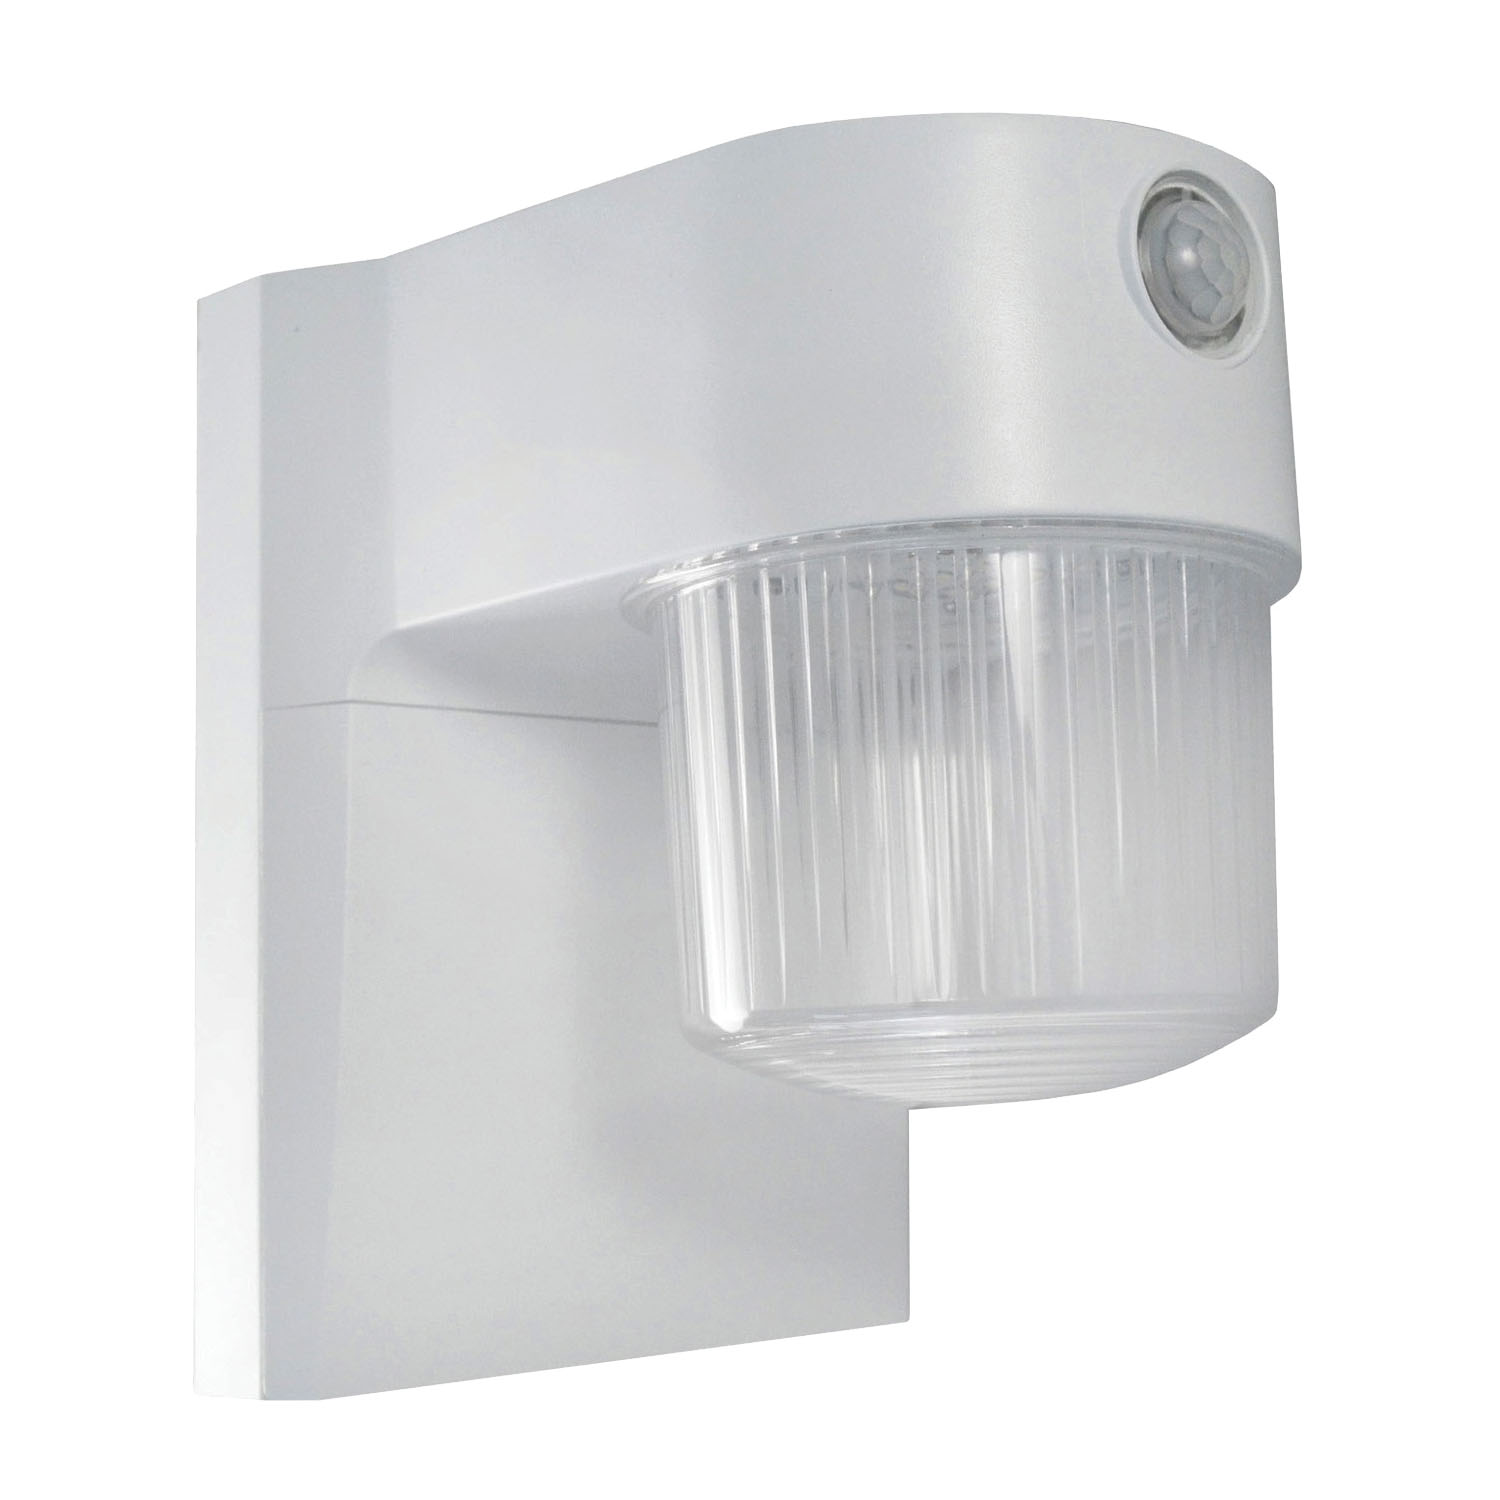 O-JJ-700-MW Motion Sensor Light, LED Lamp, 700 Lumens, 4000 k Color Temp, White Fixture